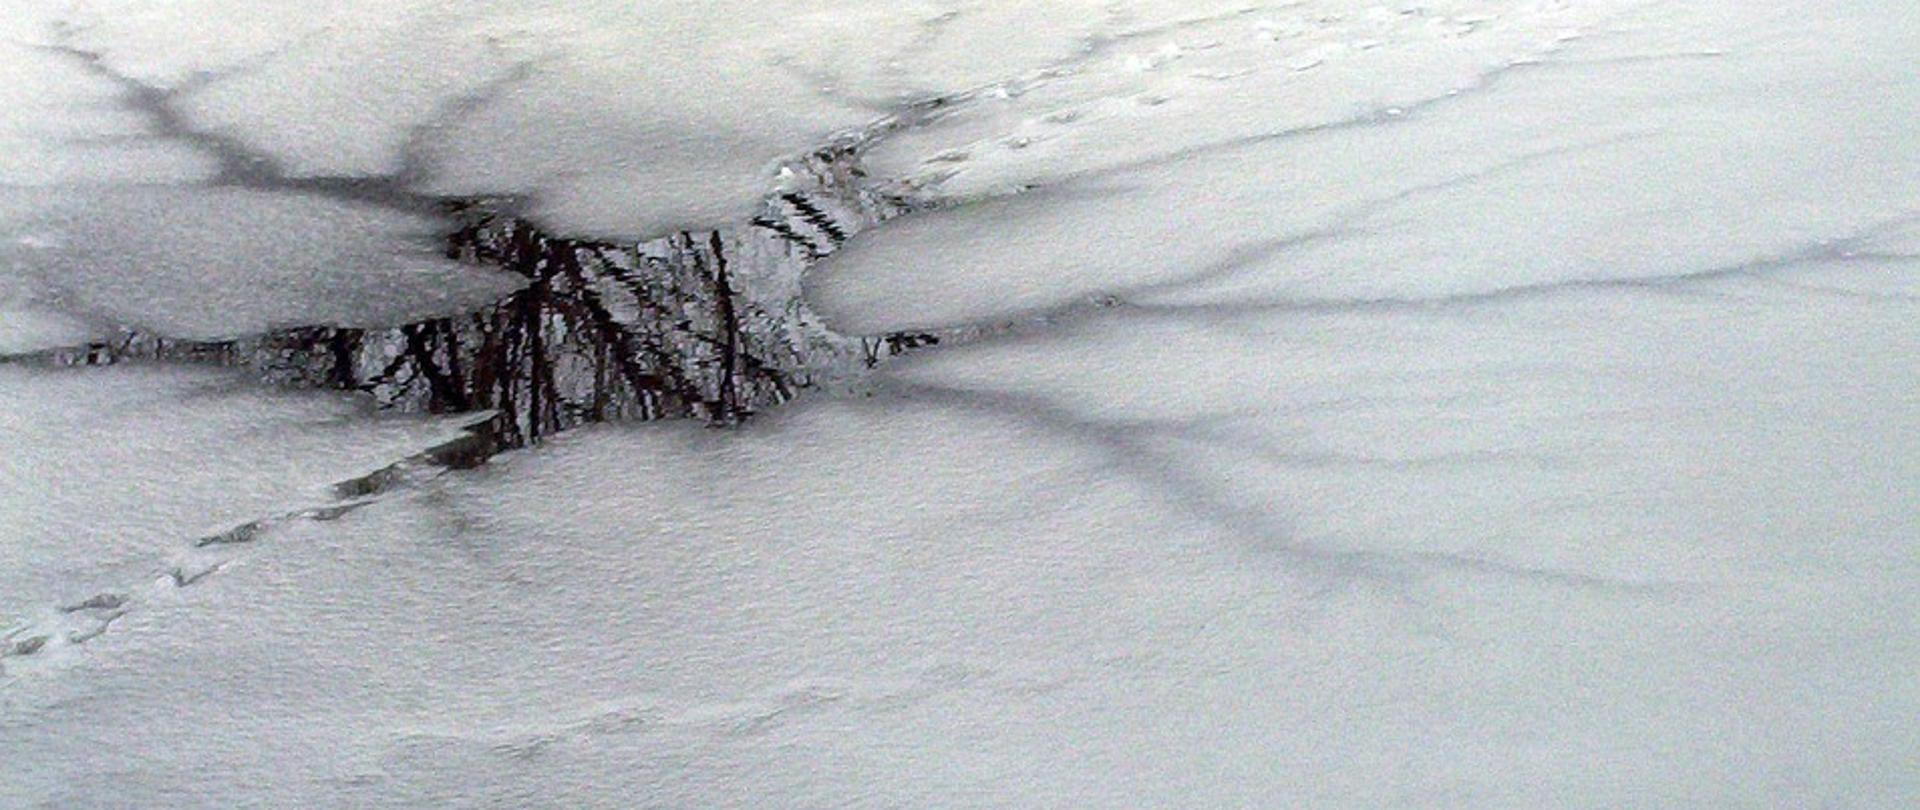 Zdjęcie przedstawia staw na którym widoczna jest bardzo cienka warstwa lodu. Jest to przestroga dla wchodzących na lód w takich miejscach.